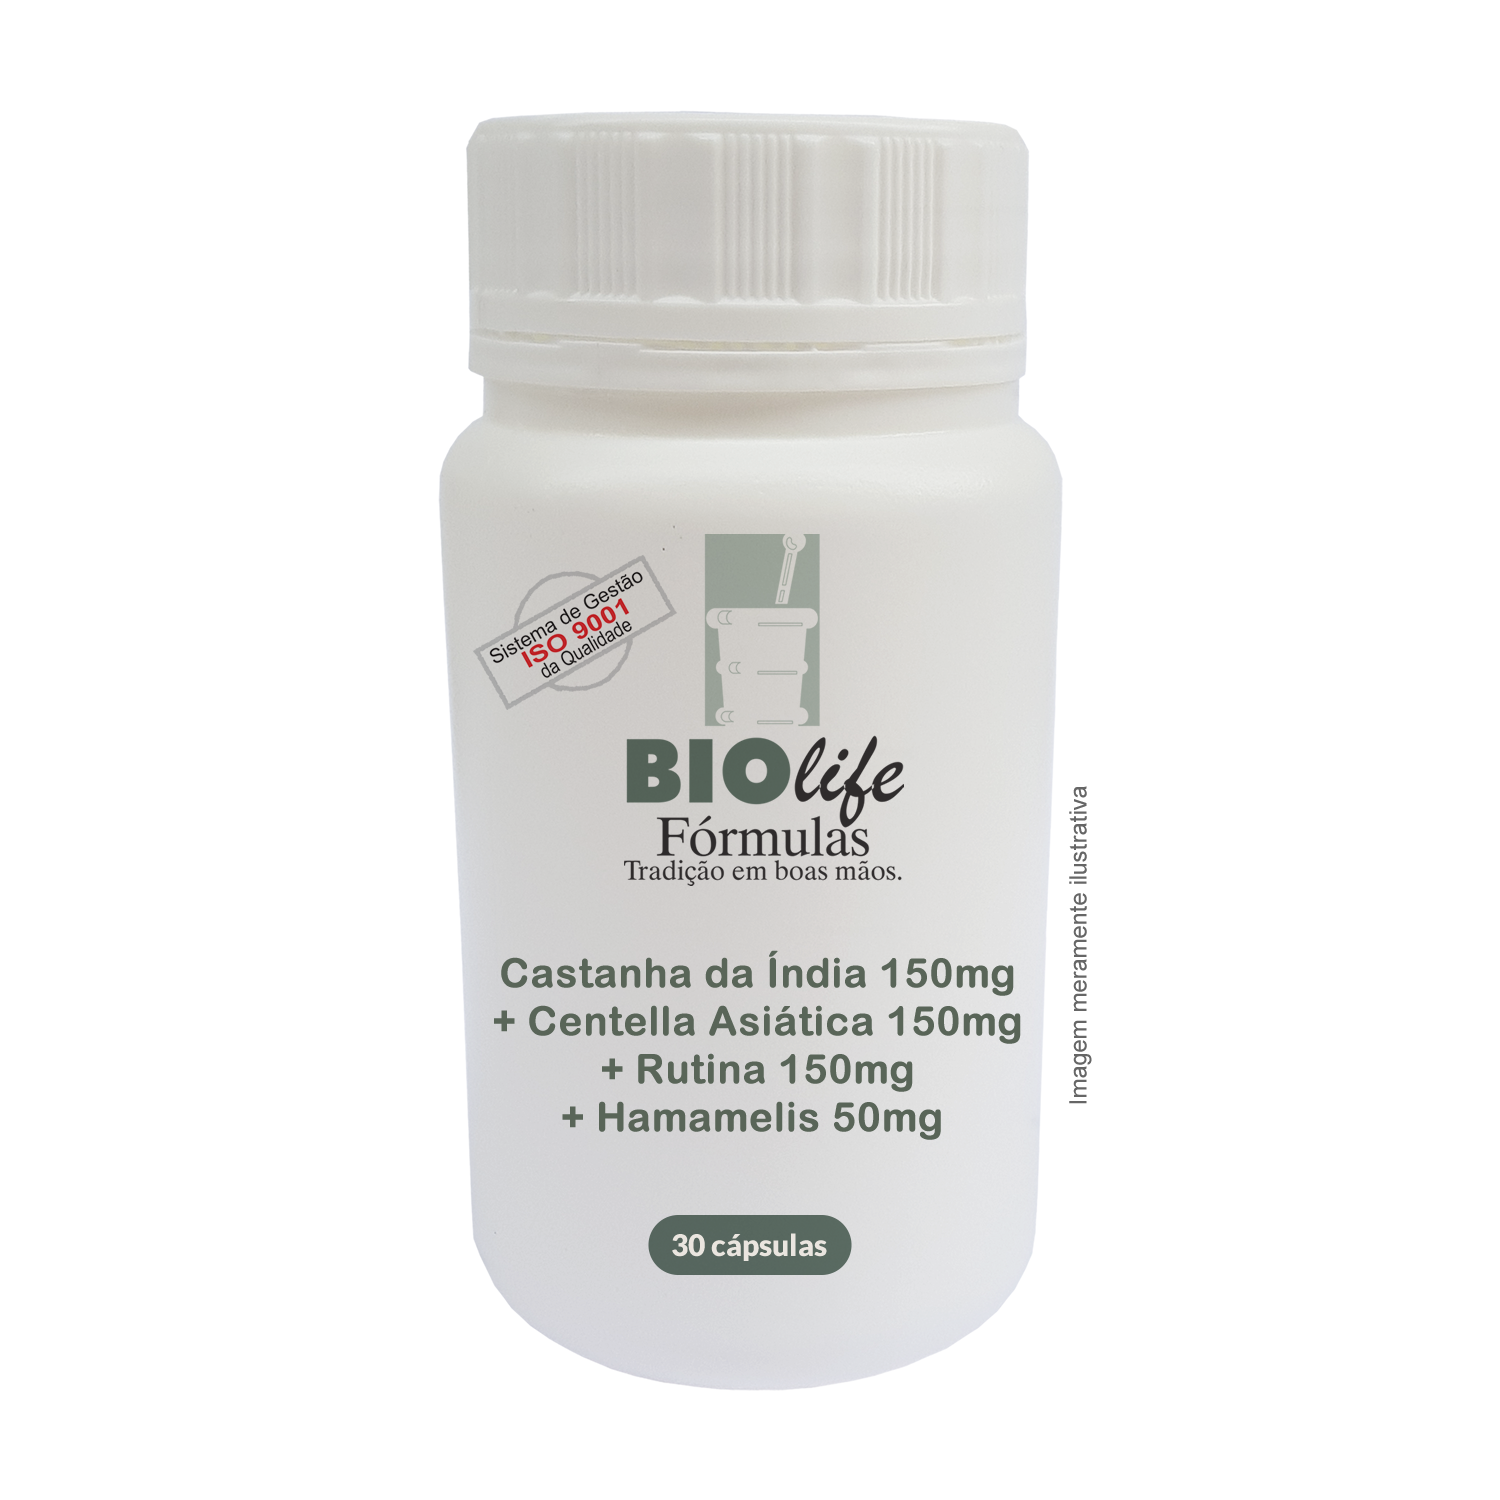 Tônico vascular - Antivaricoso - 30 cápsulas - BioLife